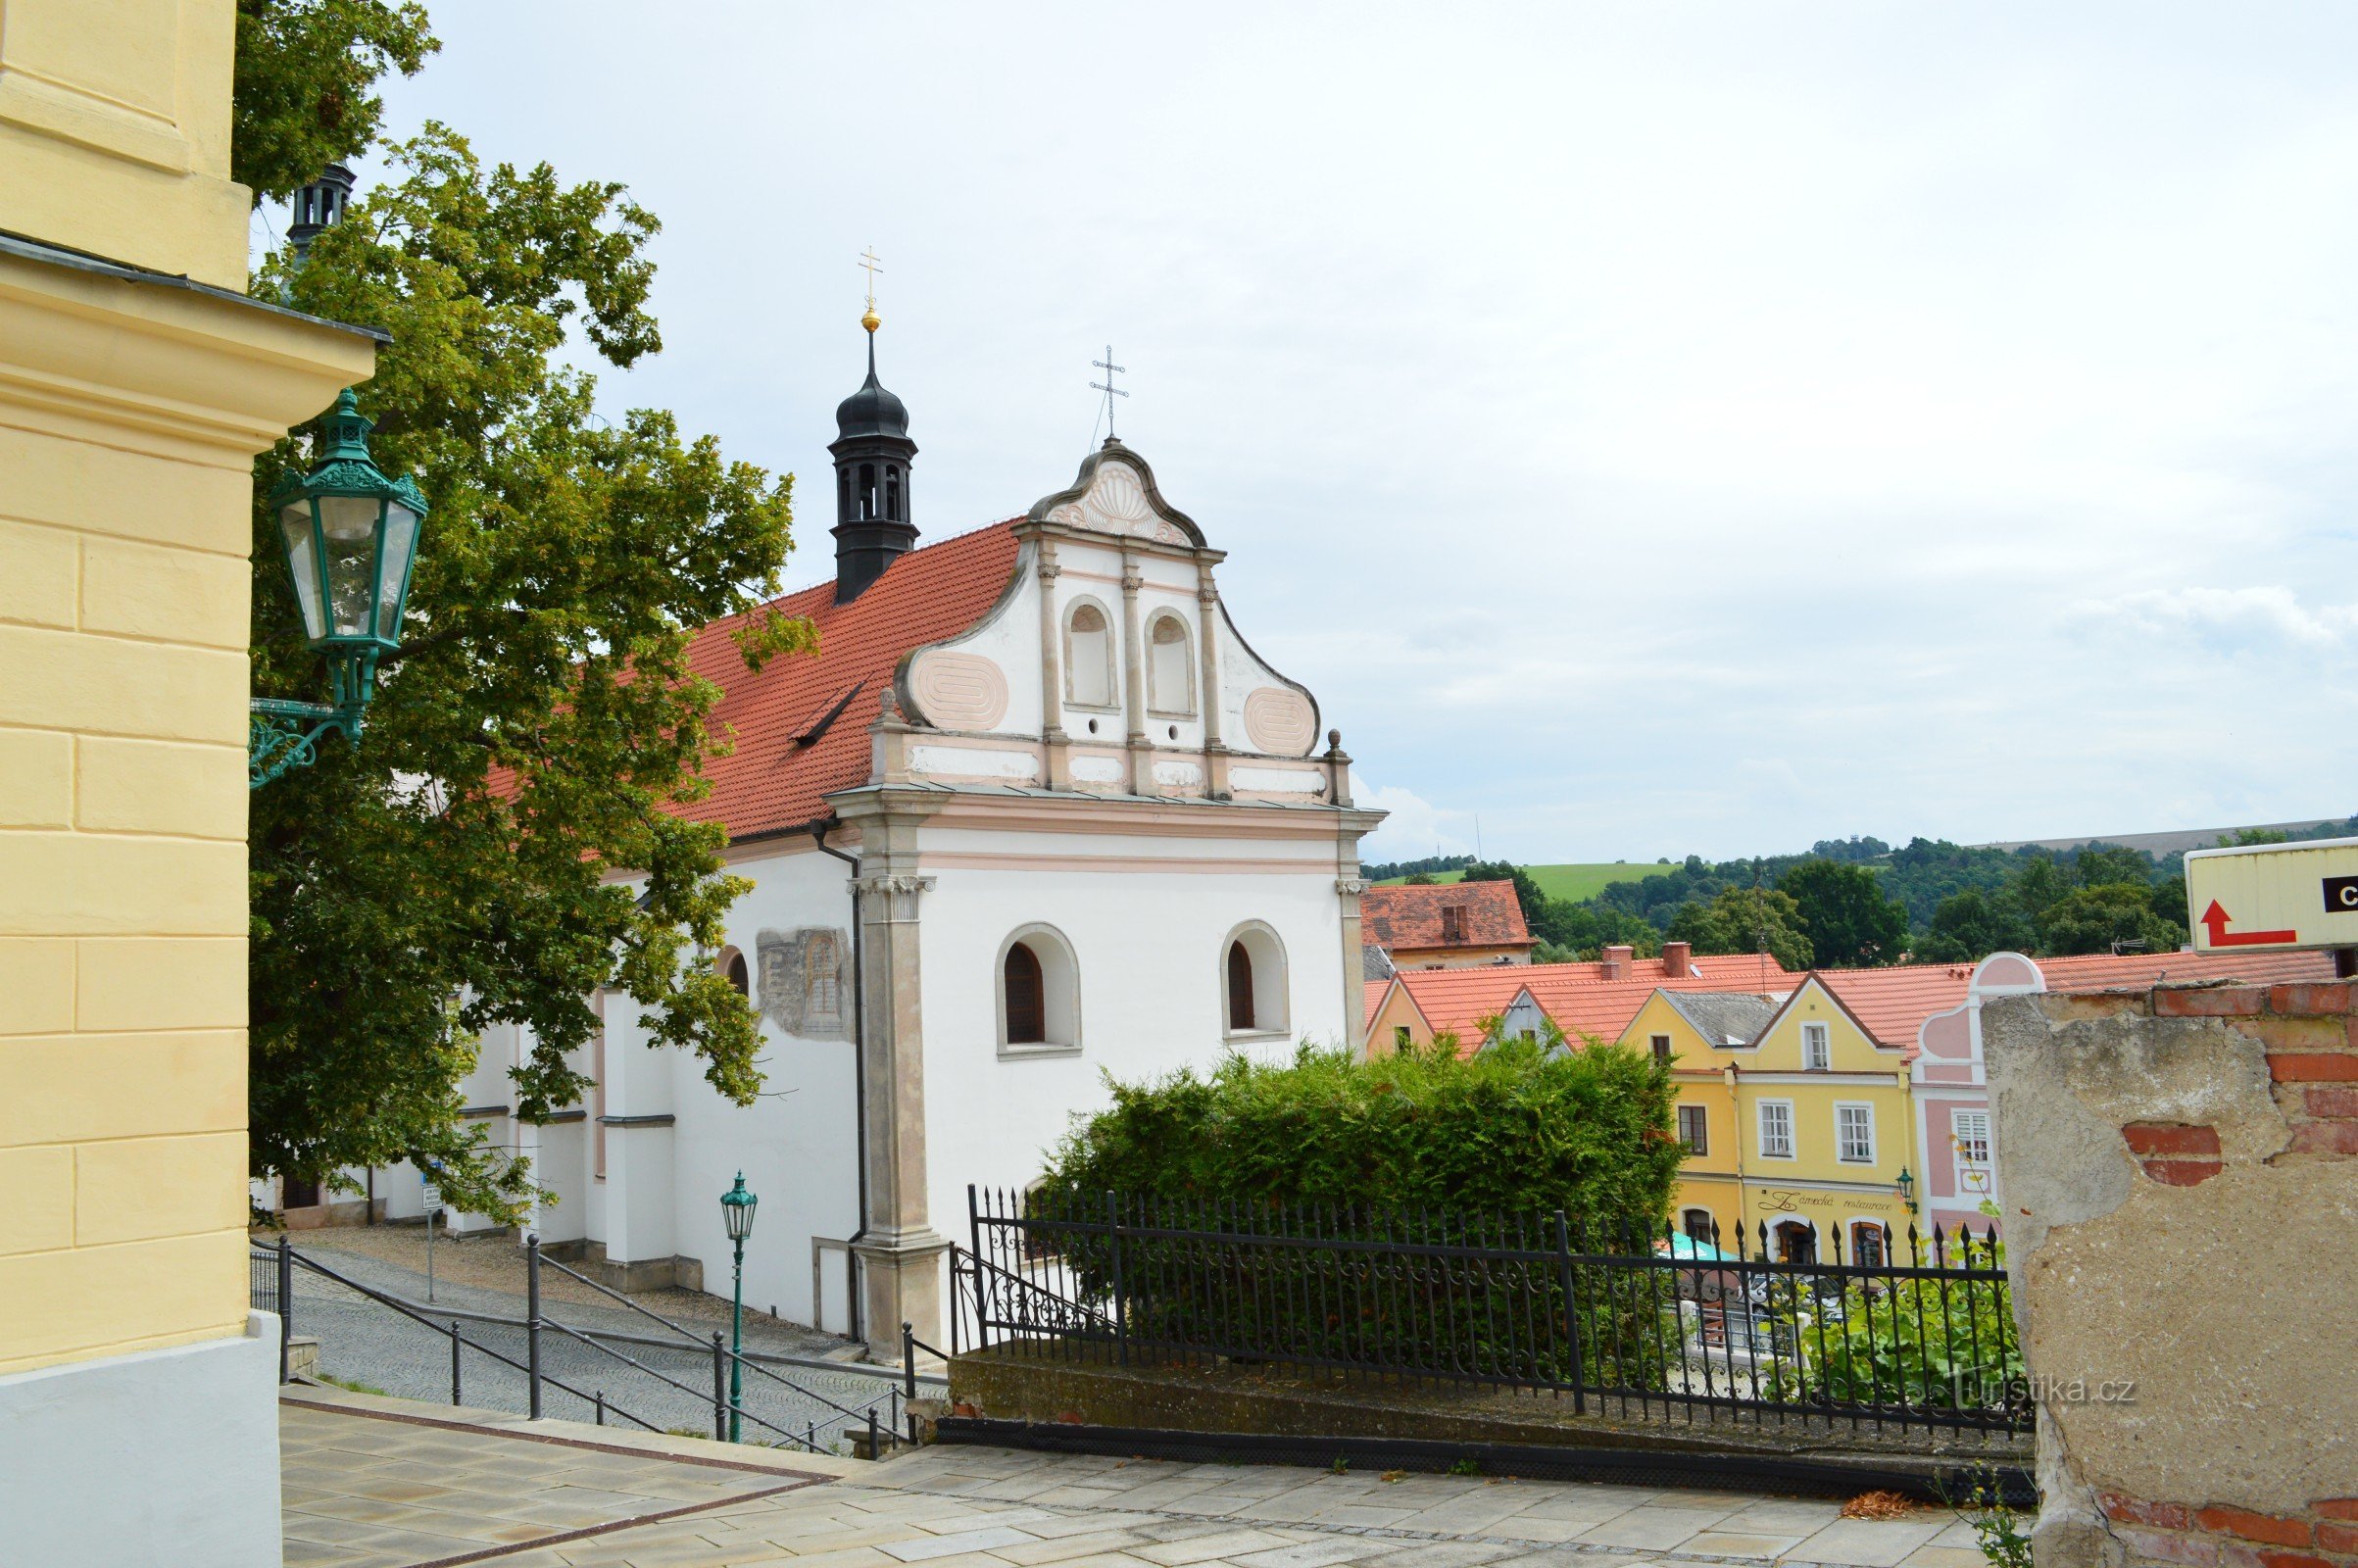 Castelul Horšovský Týn